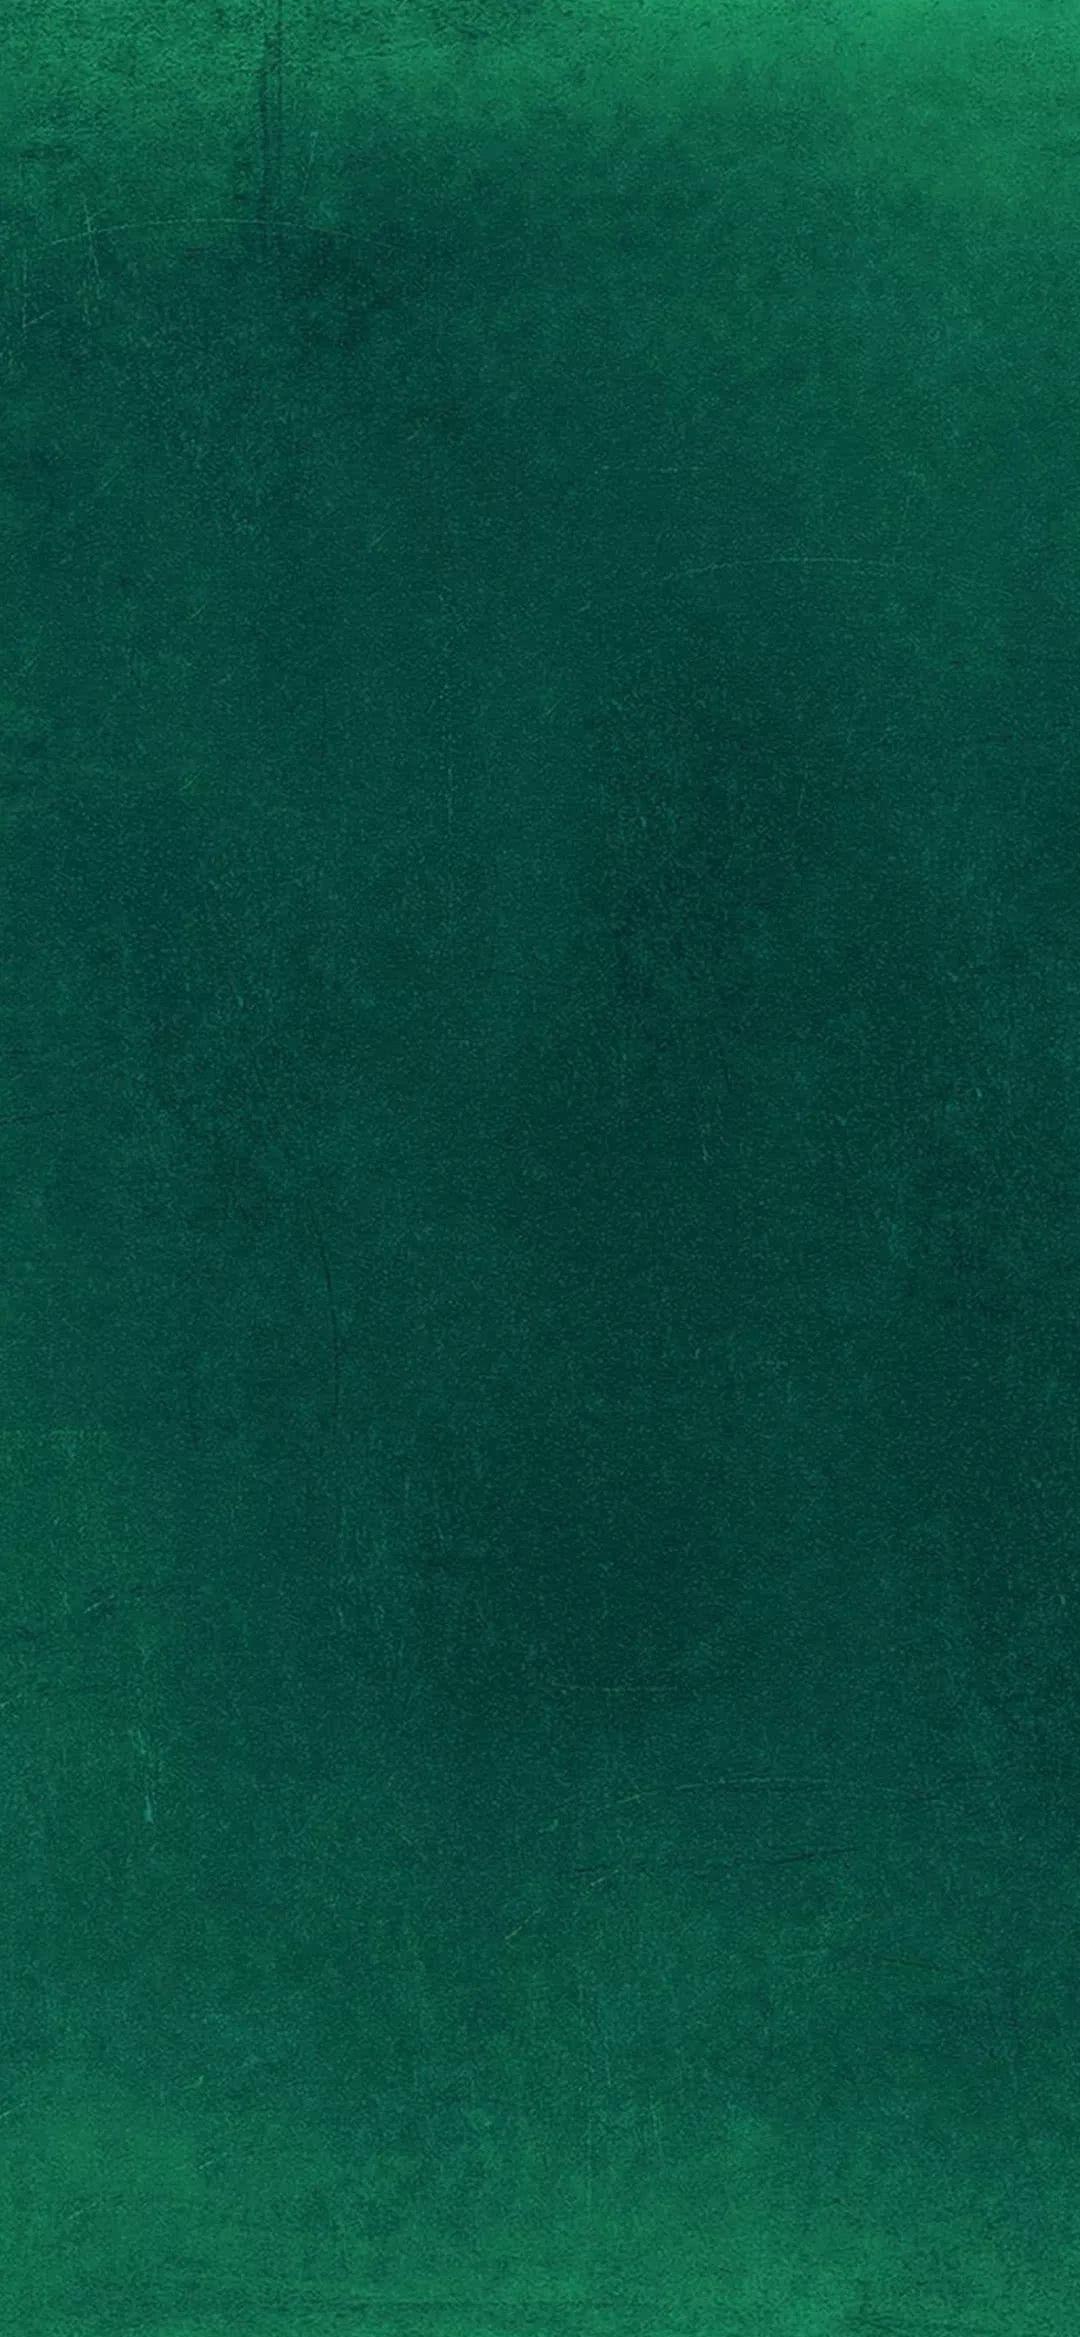 简约小清新绿色背景白色小花朵手机壁纸-比格设计